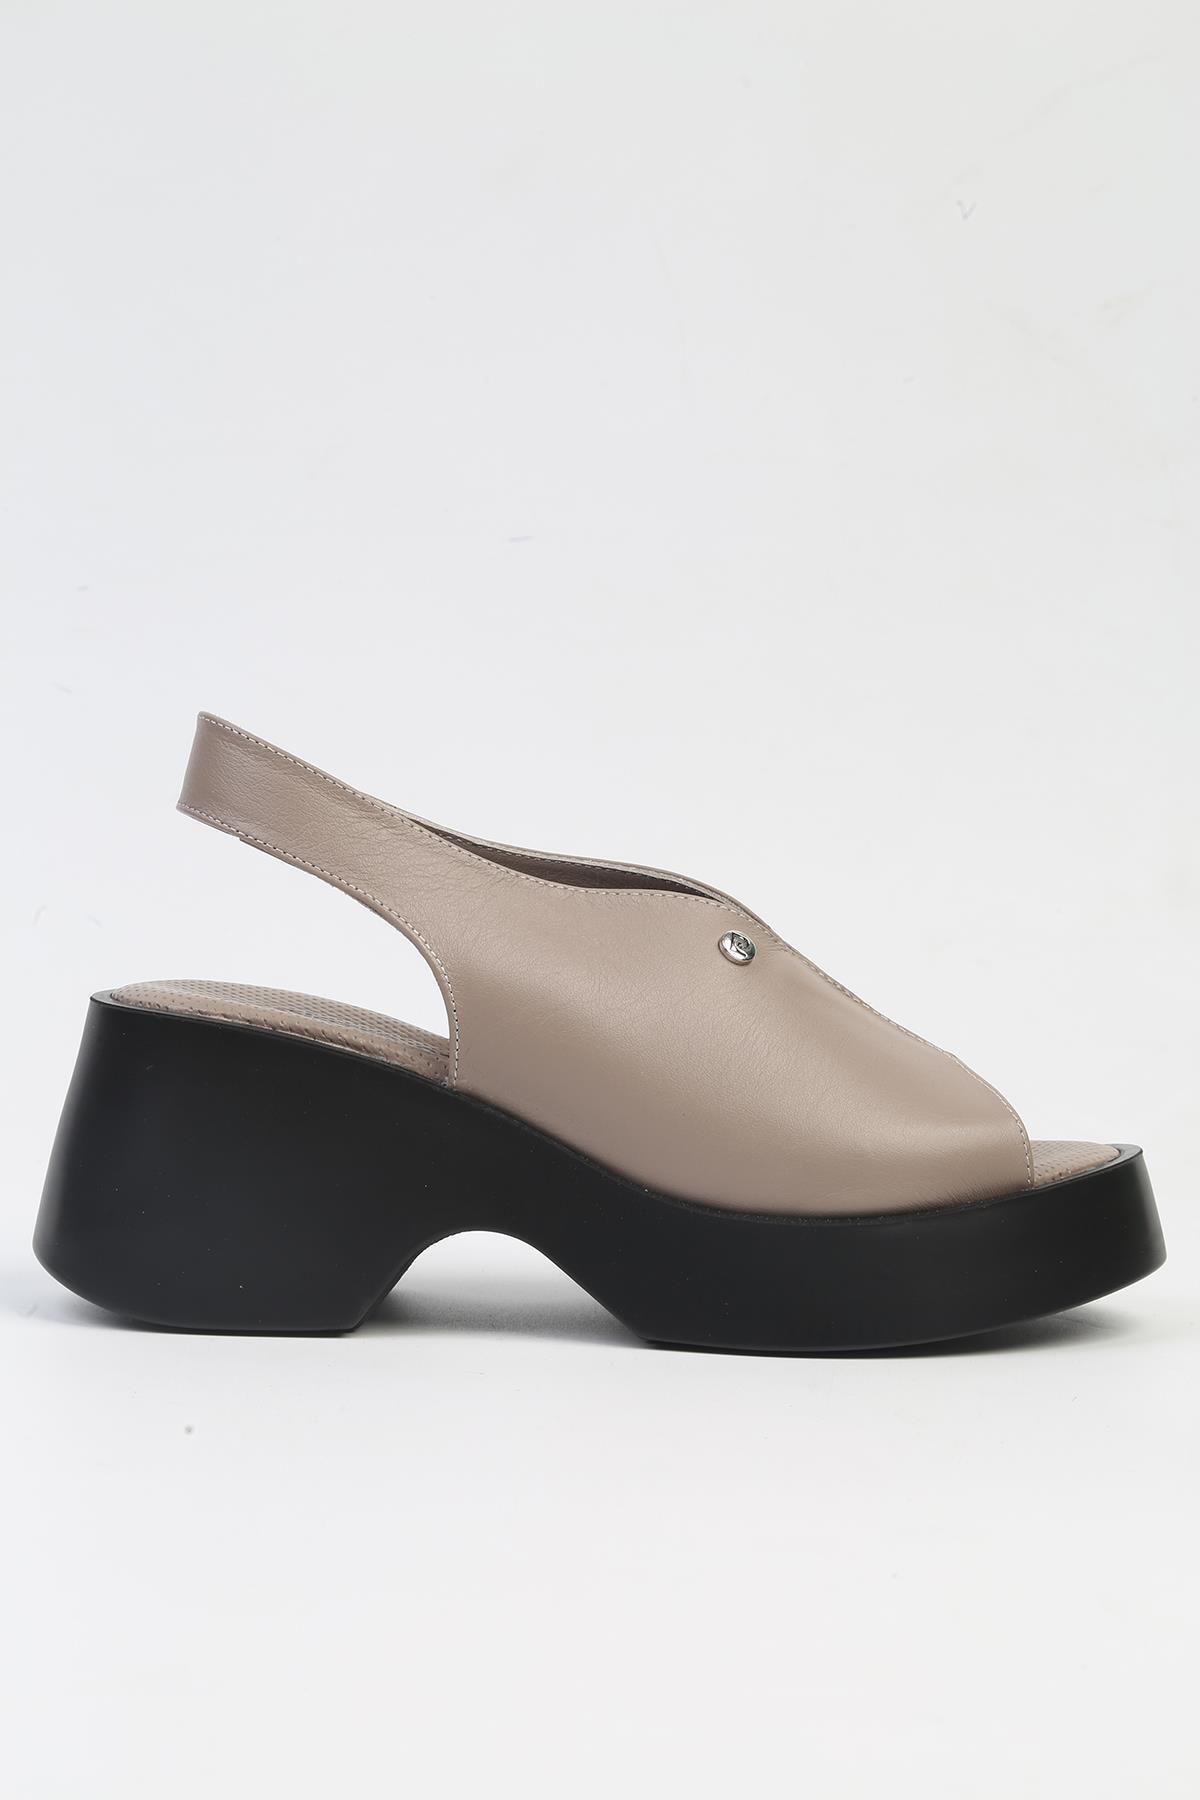 Pierre Cardin ® | PC-7200- 3968 Vizon-Kadın Topuklu Ayakkabı